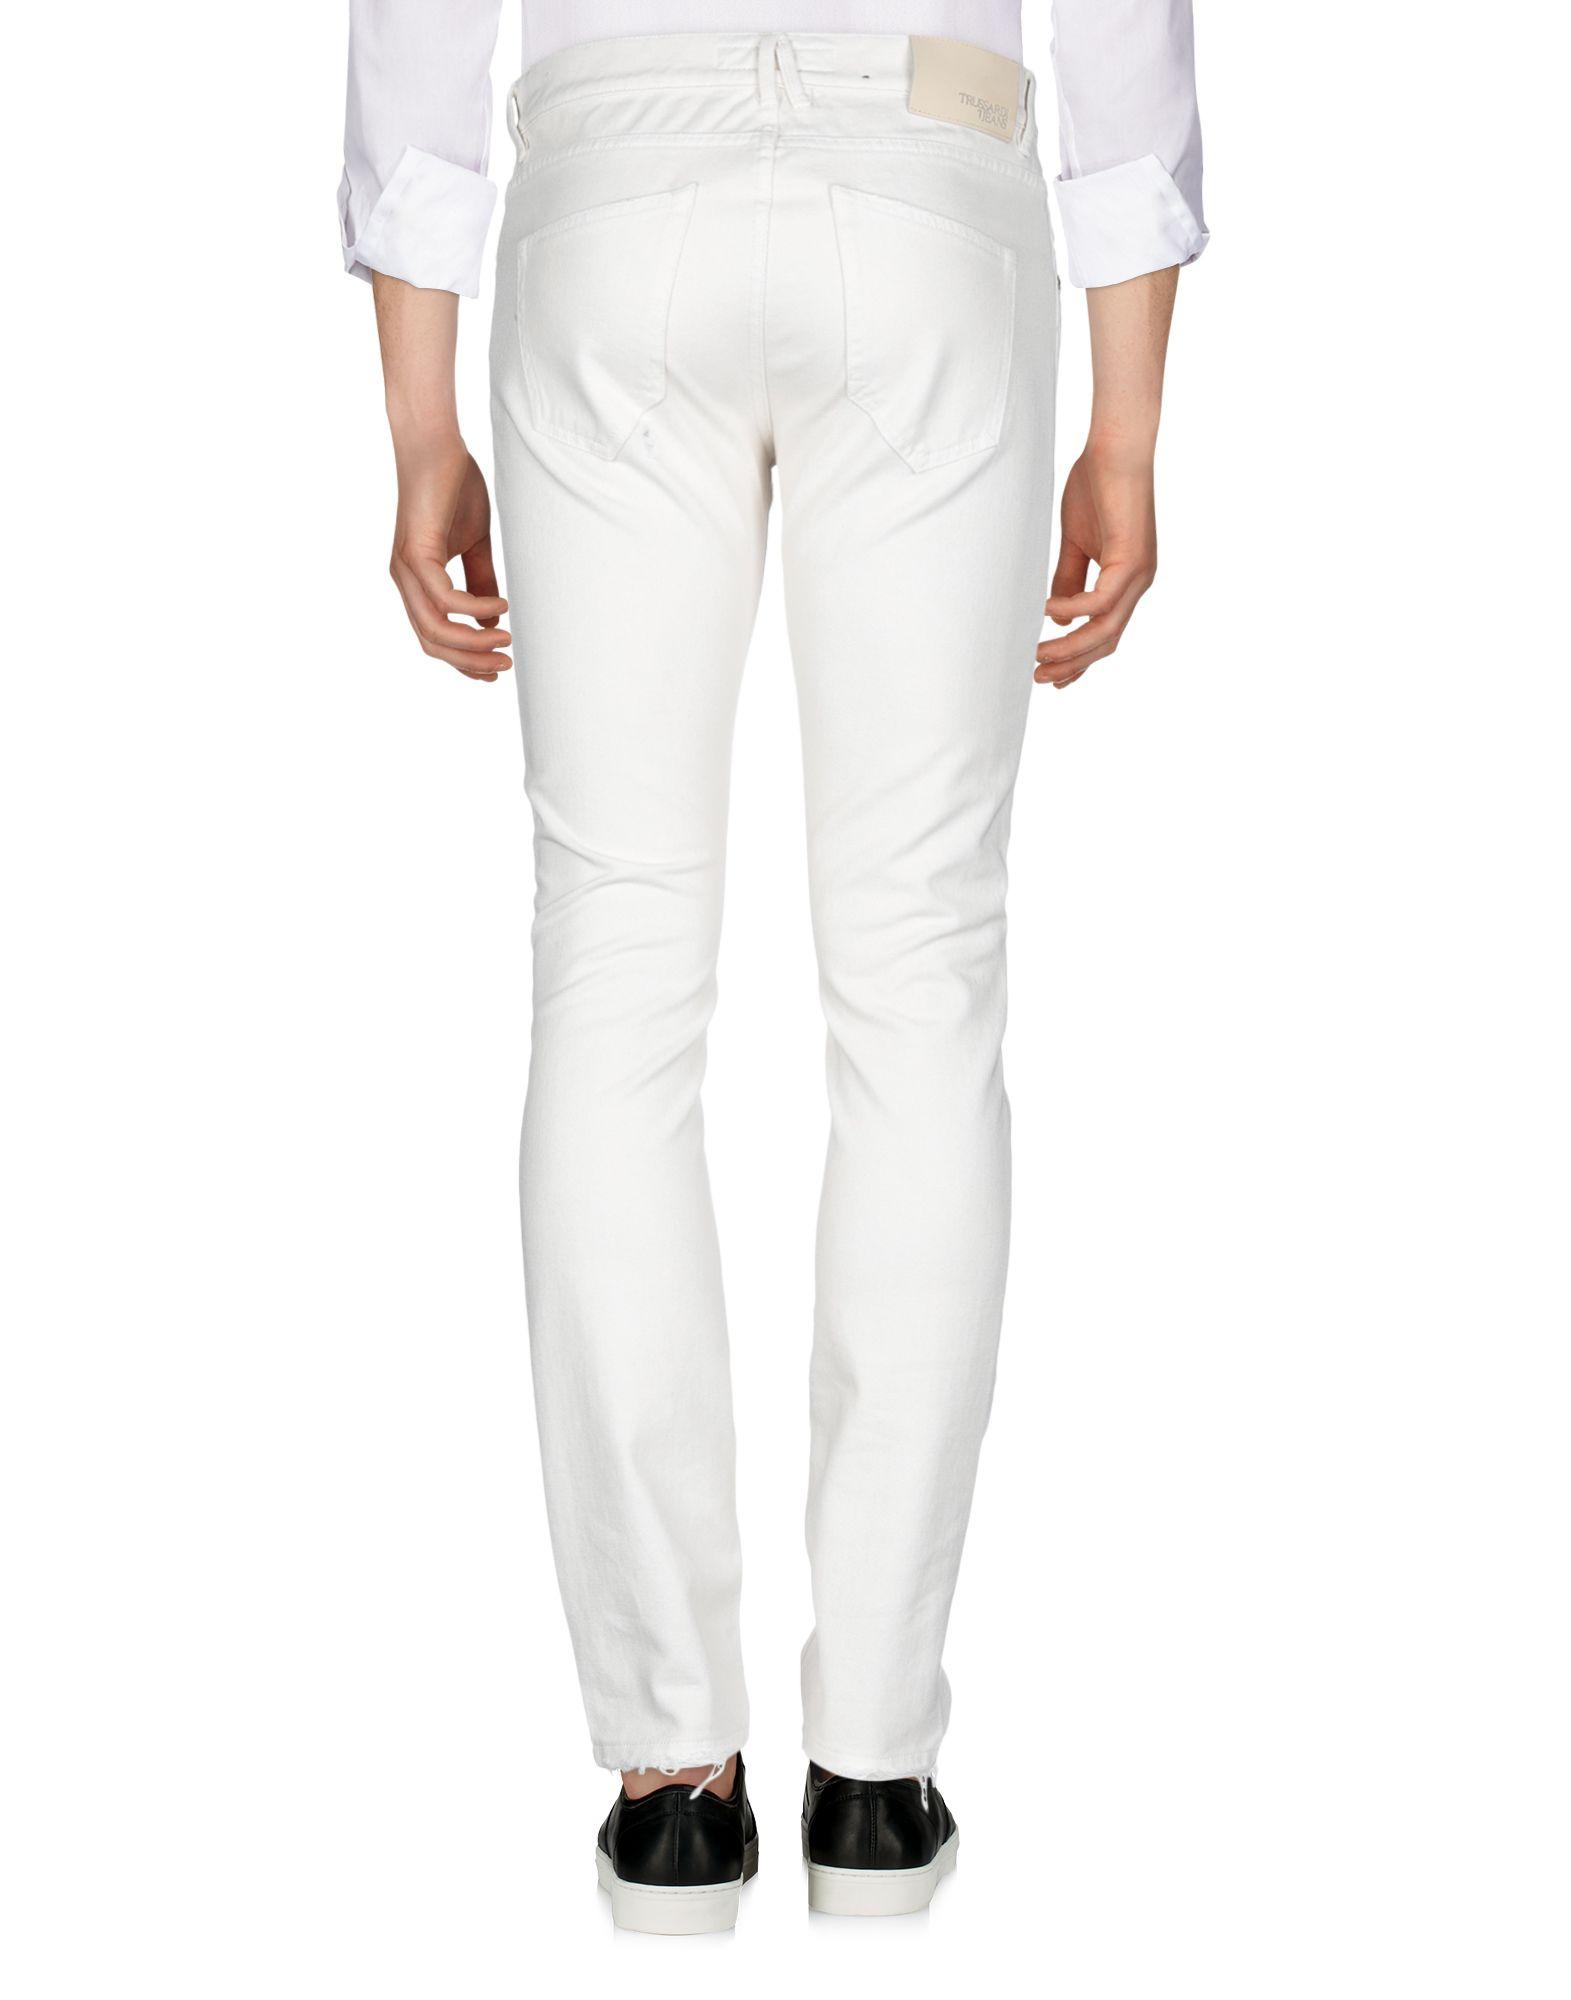 Trussardi Denim Trousers in Ivory (White) for Men - Lyst